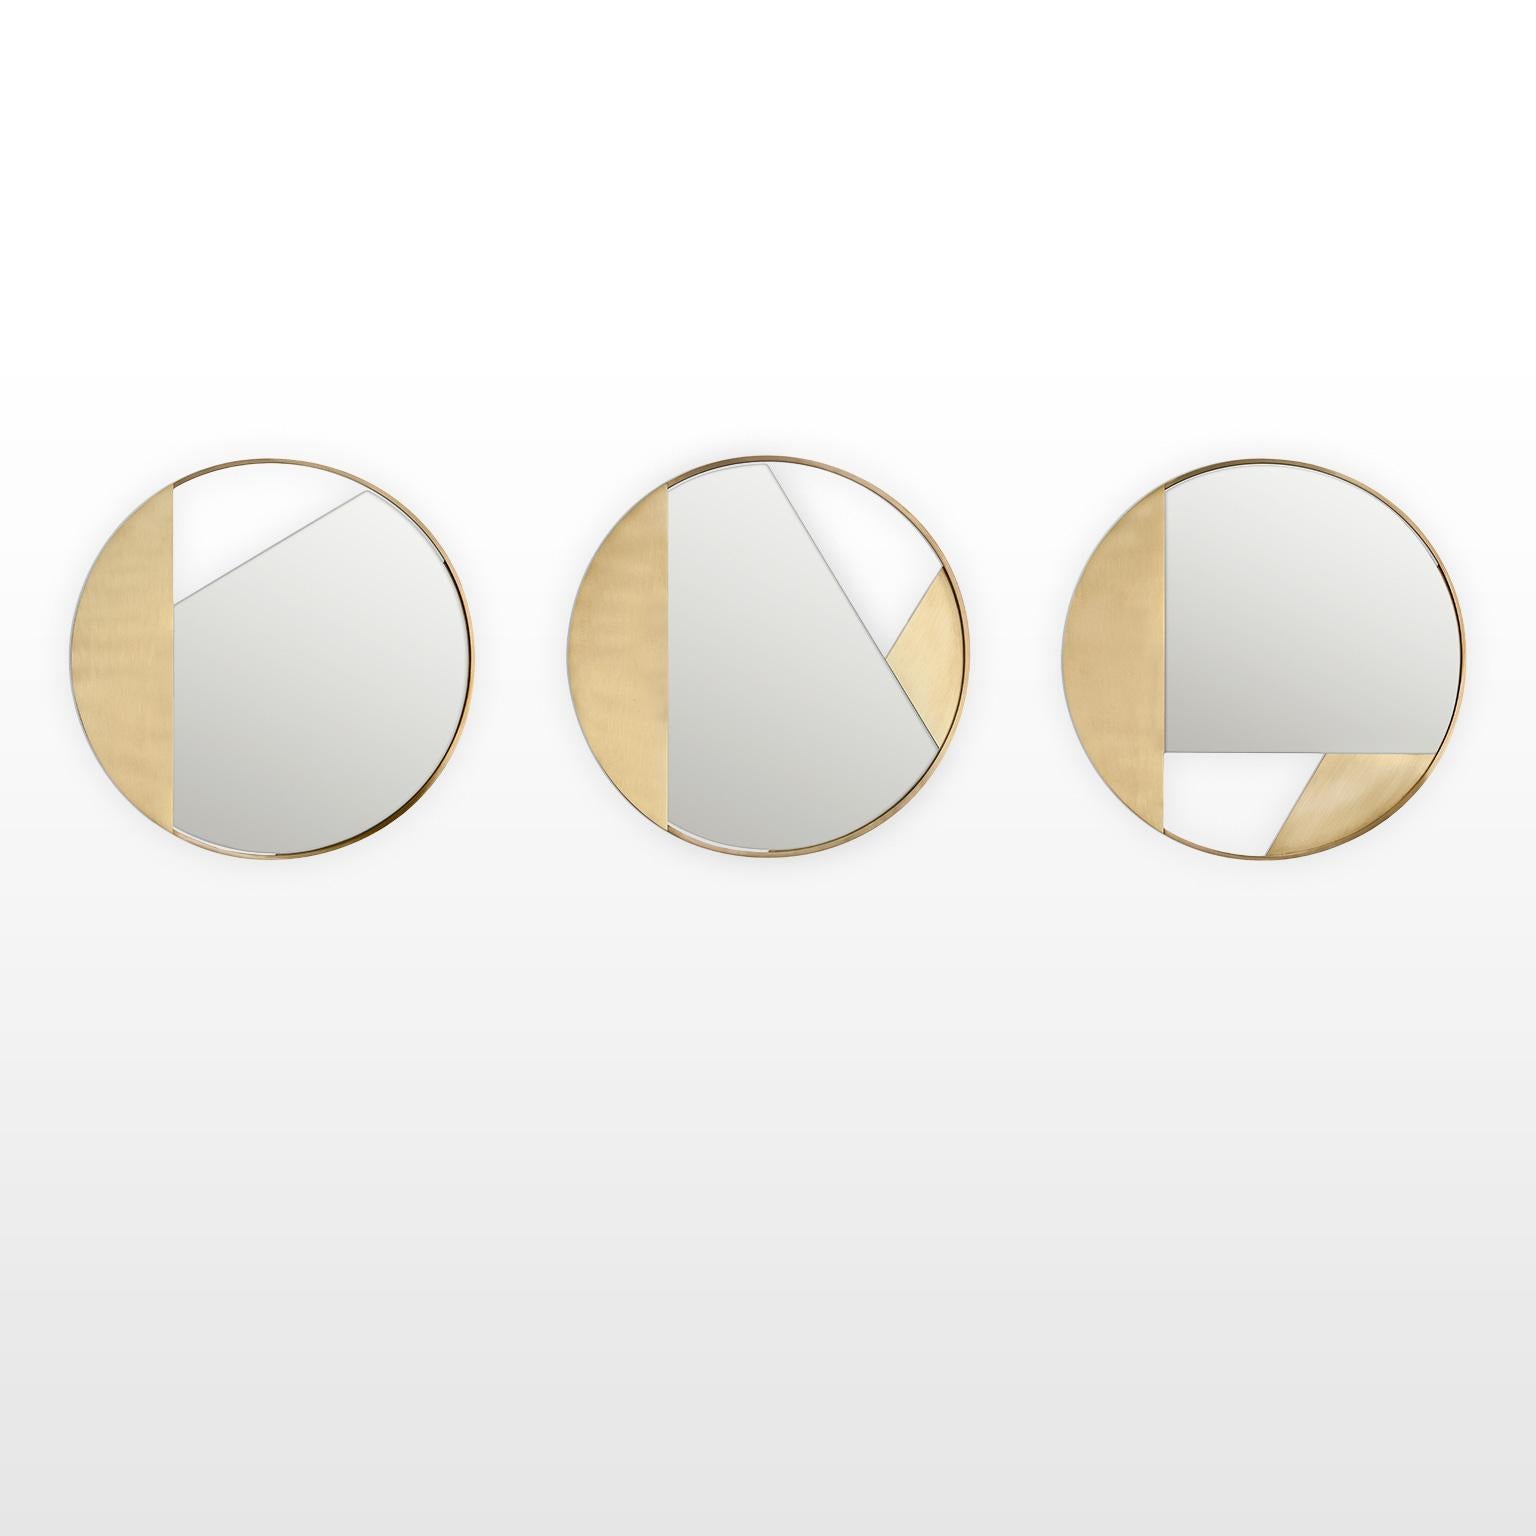 Contemporary Limited Edition Brass Mirror, Revolution 90 V2 by Edizione Limitata For Sale 4